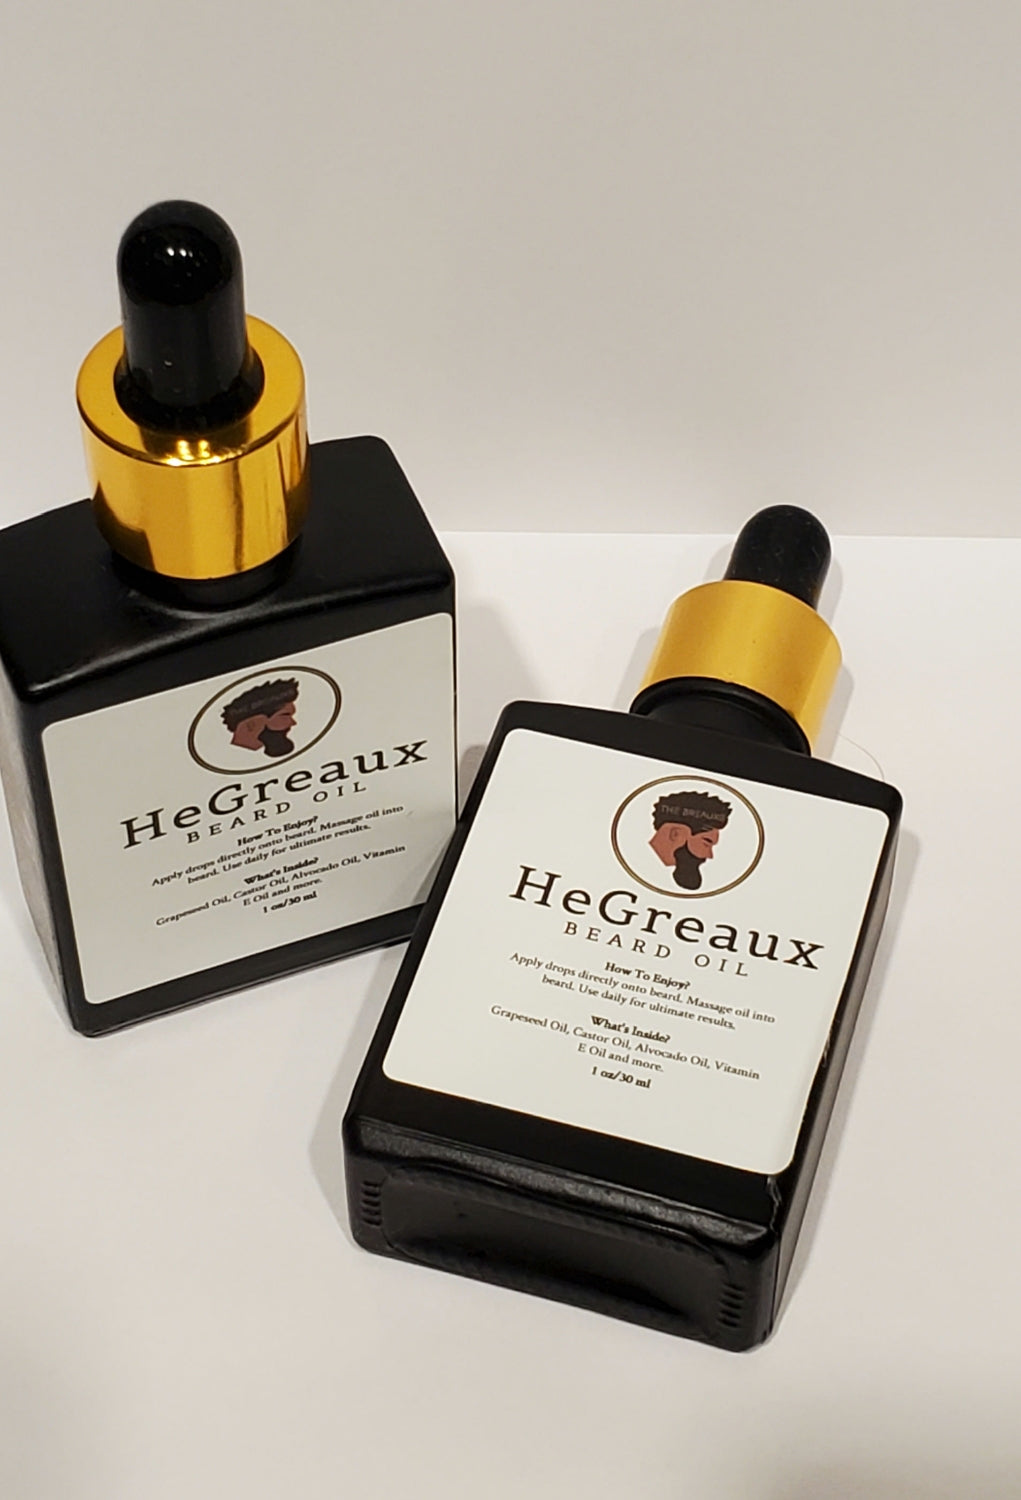 HeGreaux - The Breauxs - Beard Oil